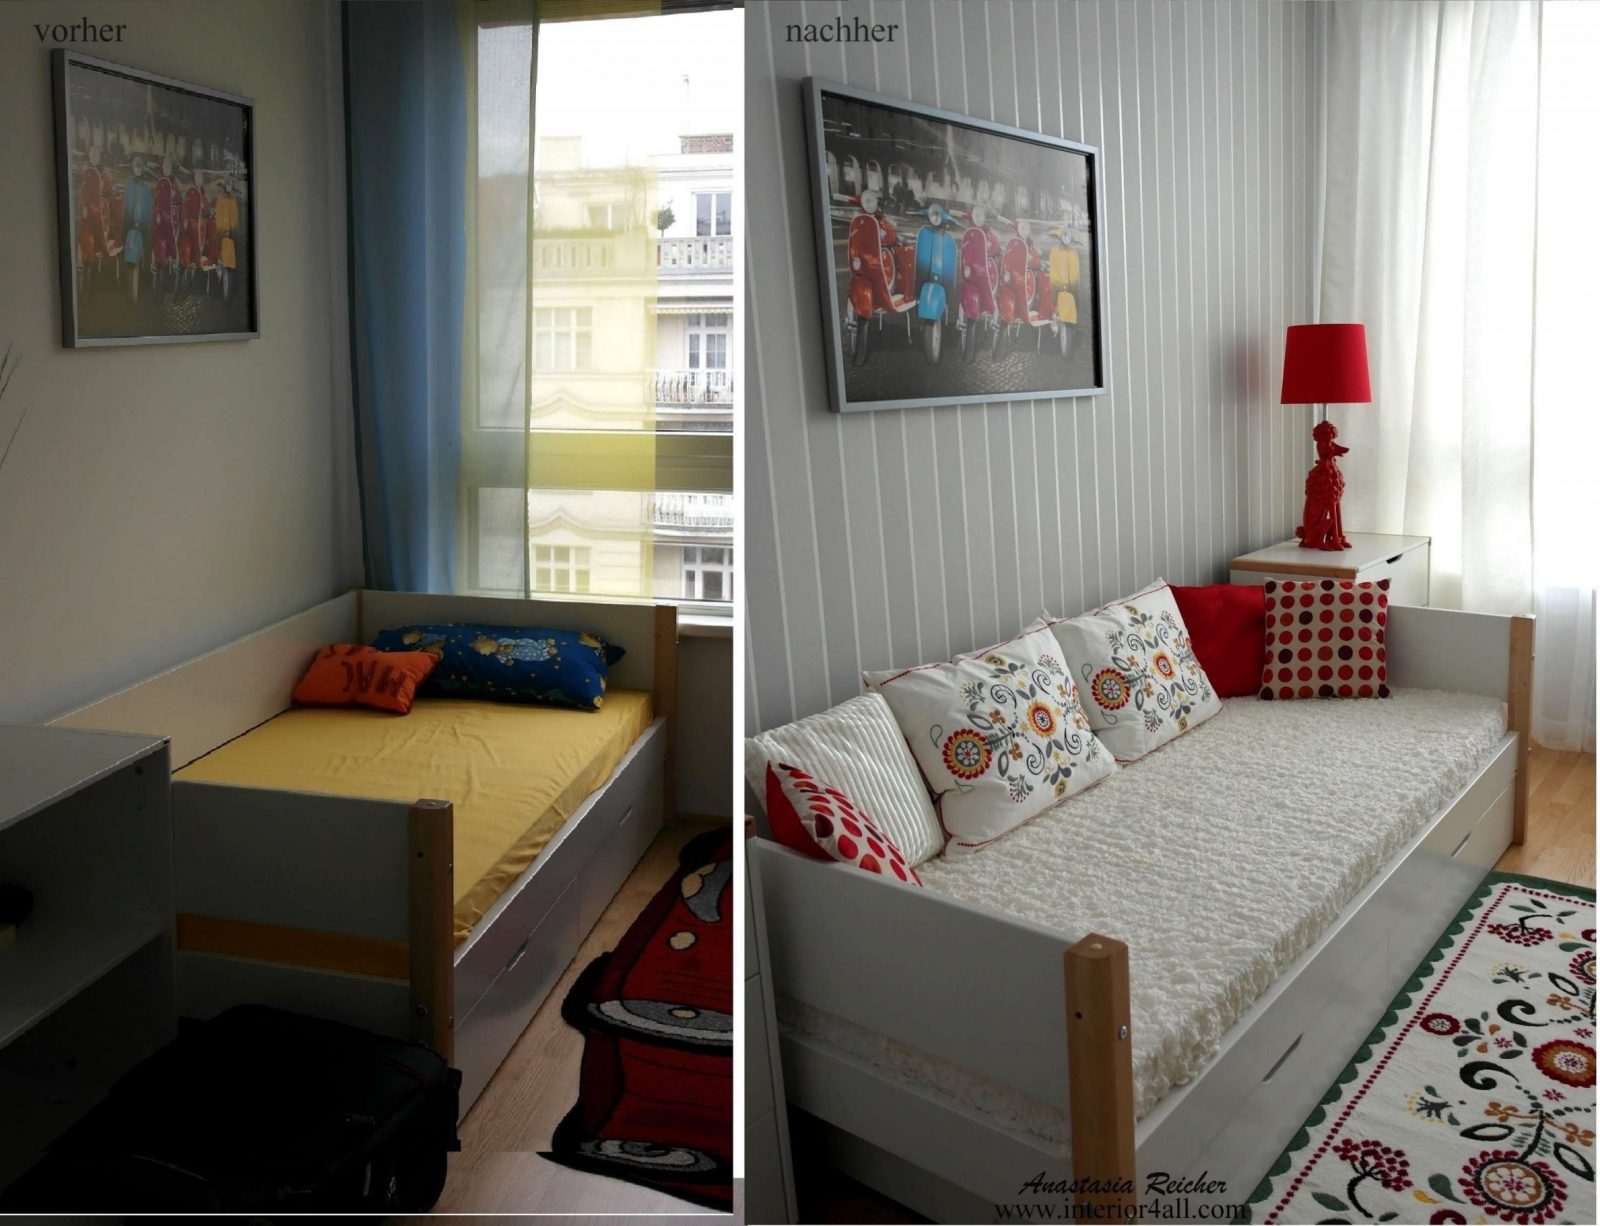 20 Qm Wohnzimmer Einrichten Home Ideen New 14 Zimmer Ikea Lcshoots von 13 Qm Zimmer Einrichten Photo